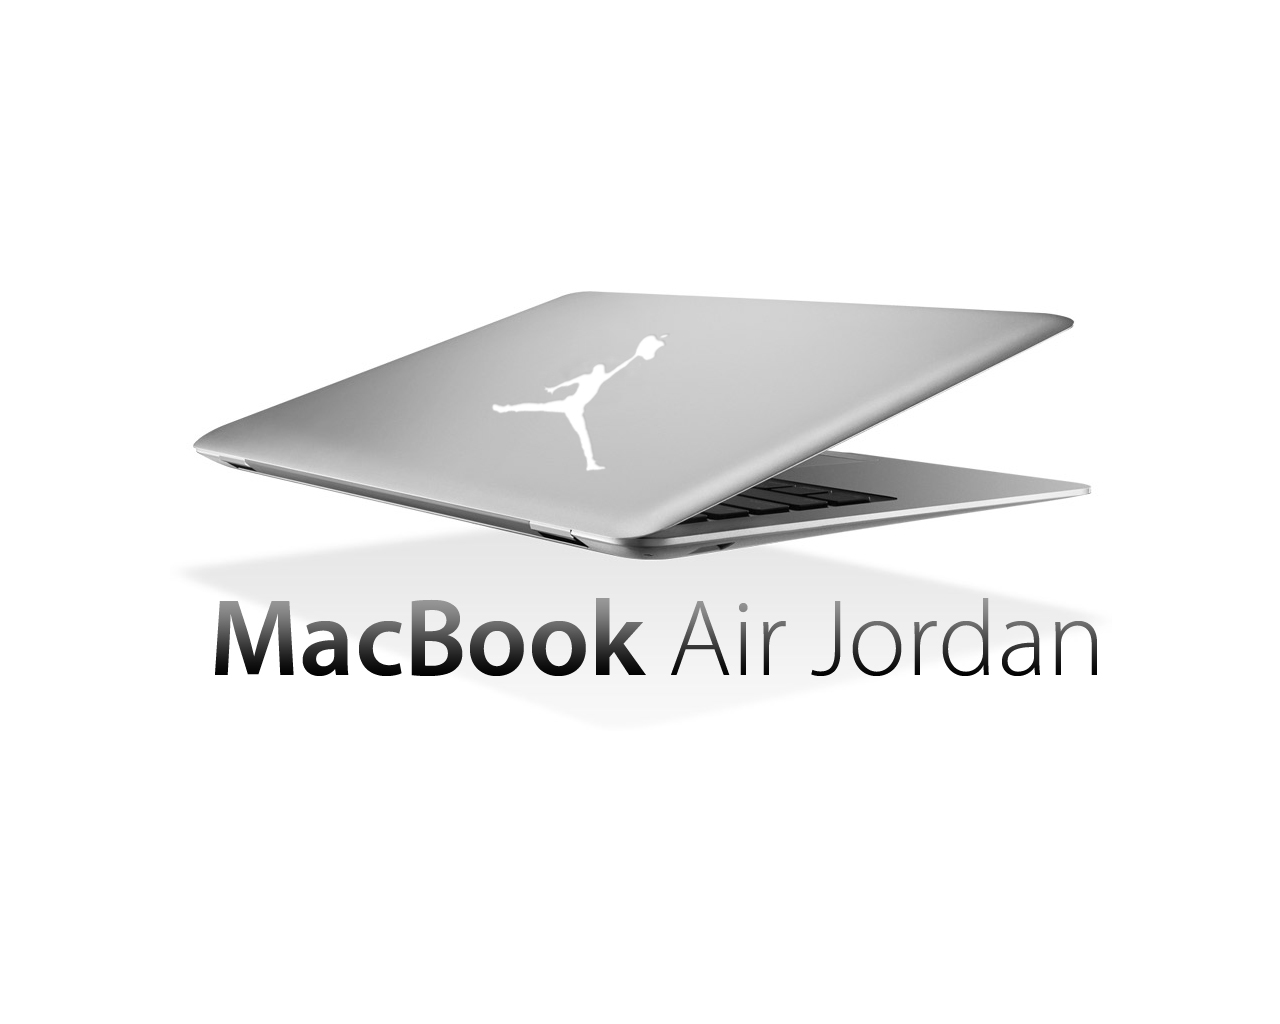 MacBook Air jordan の登場です。